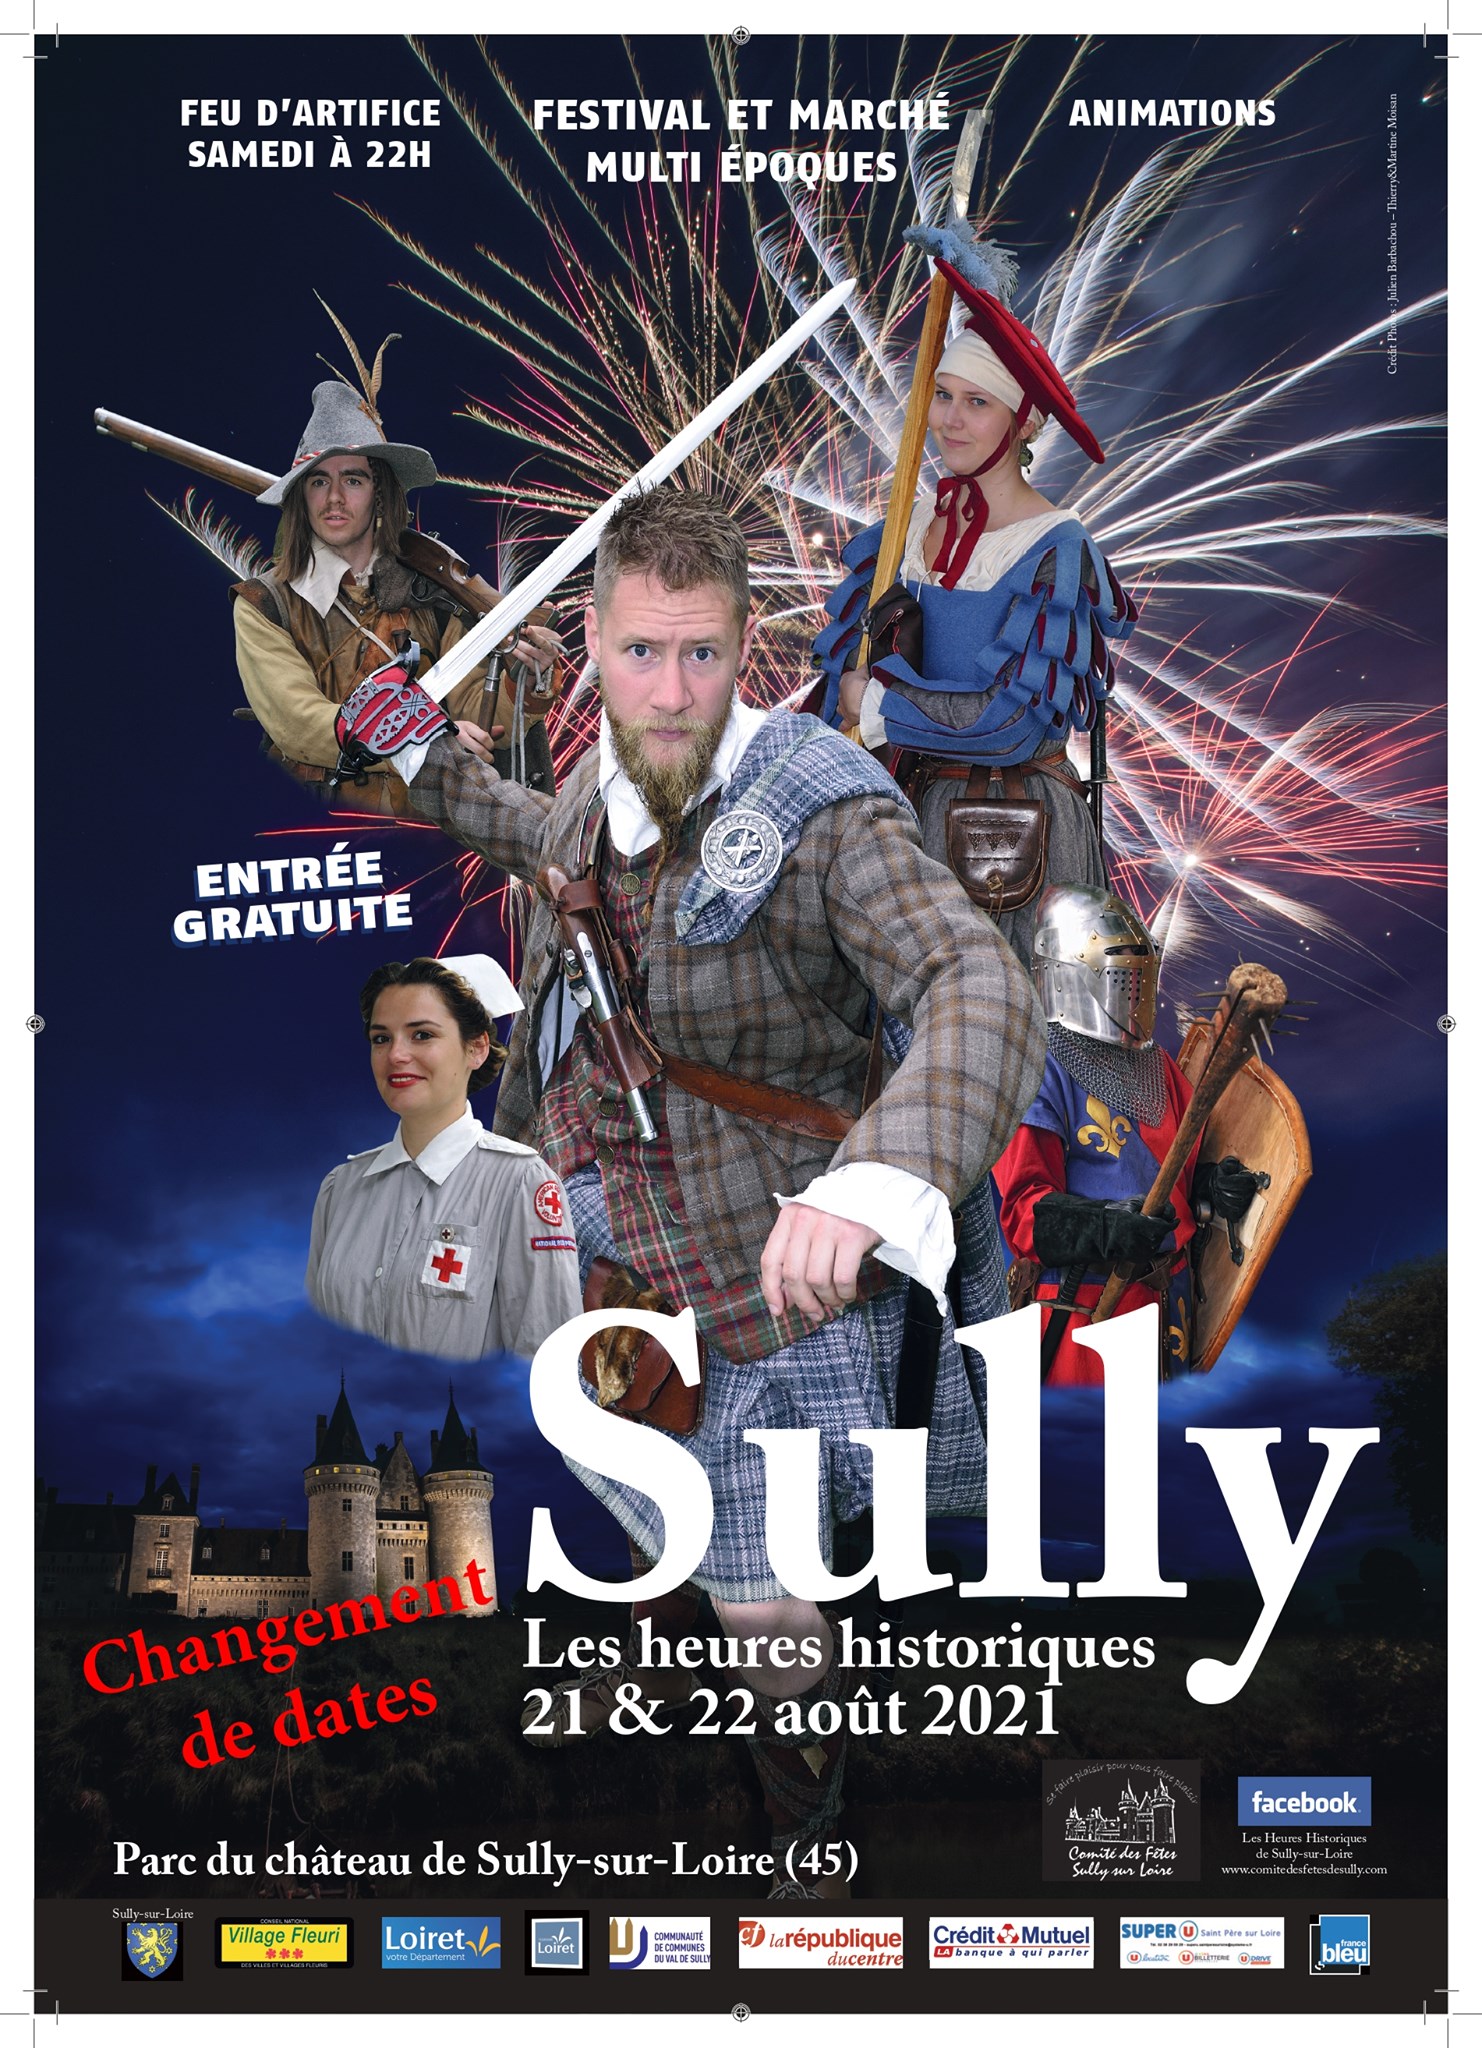 Les heures historiques de Sully-sur-Loire